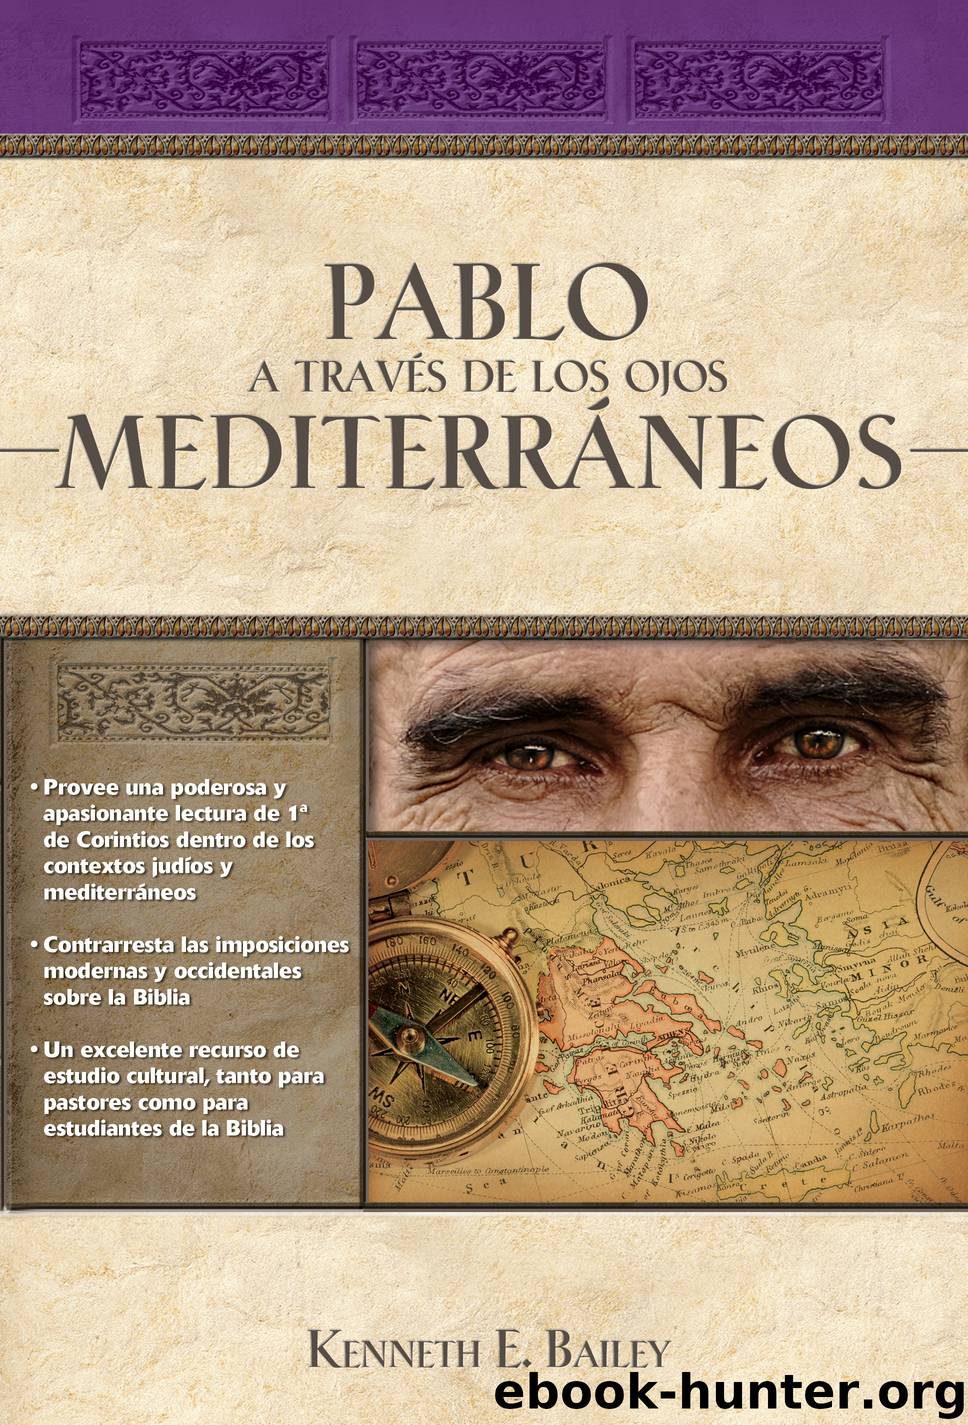 Pablo a través de los ojos mediterráneos by Kenneth E. Bailey